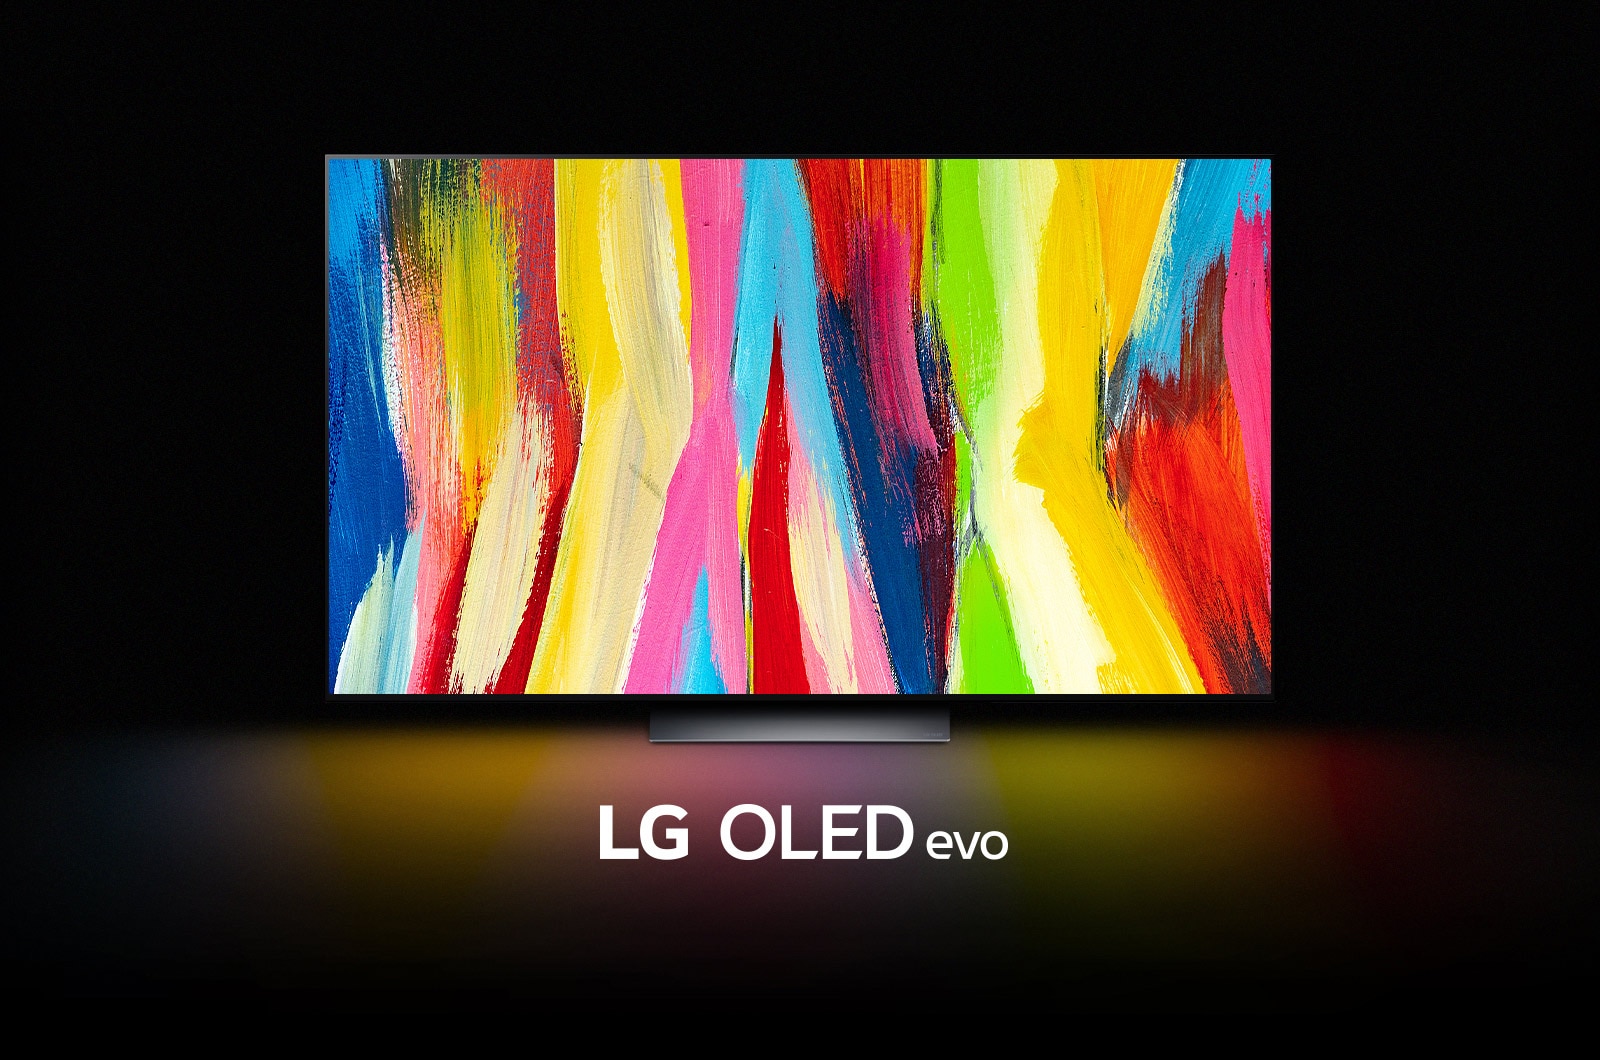 Renomowany telewizor LG OLED C2 w znakomitej ofercie! 65 cali z dużym rabatem i gratis w pakiecie - gdzie?